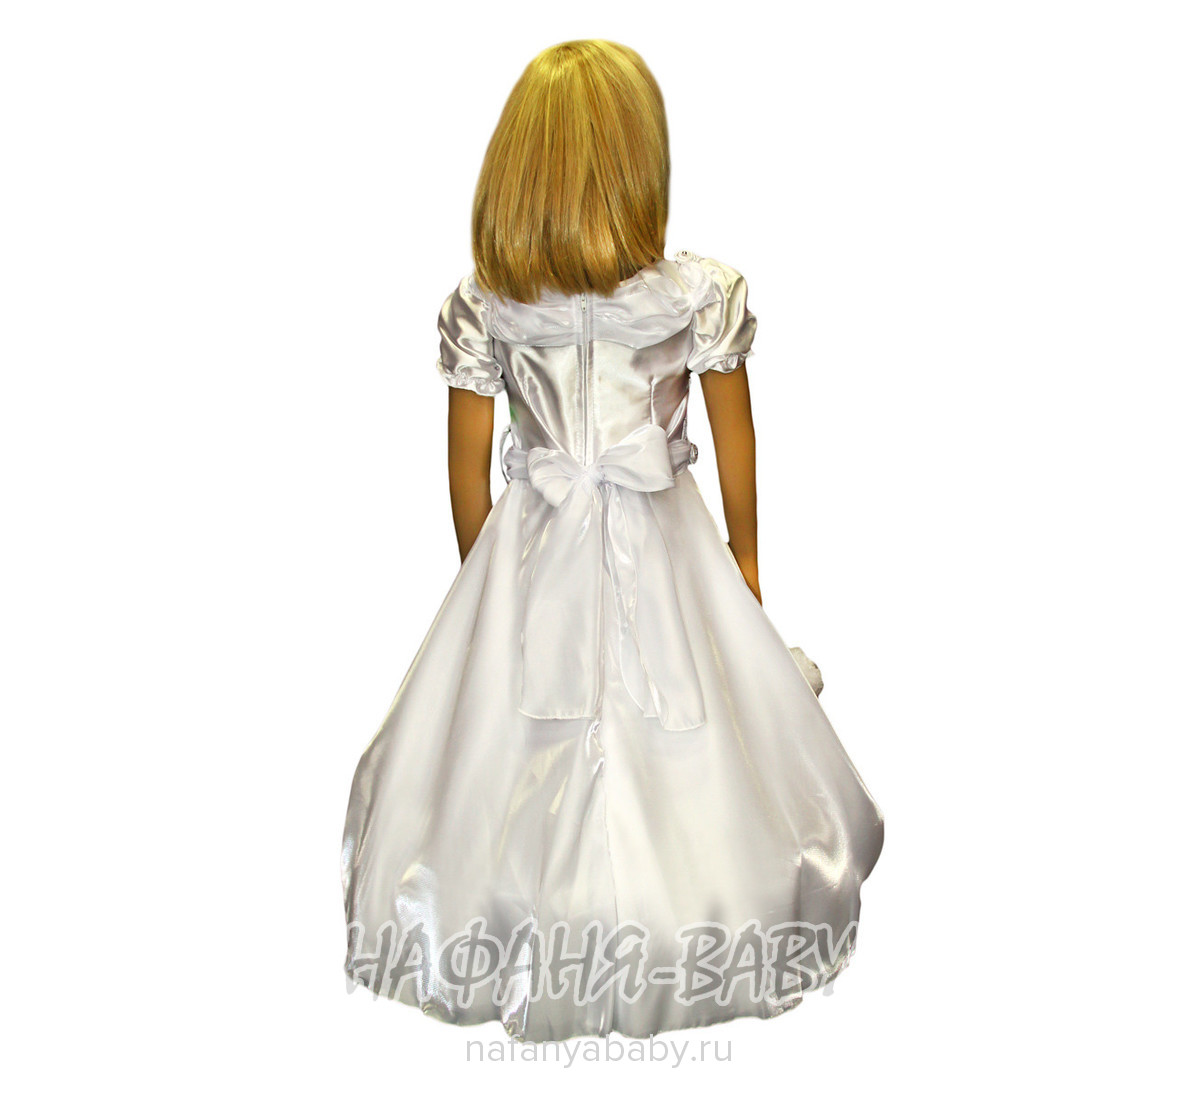 Детское платье ALTIN KIDS, купить в интернет магазине Нафаня. арт: 153.